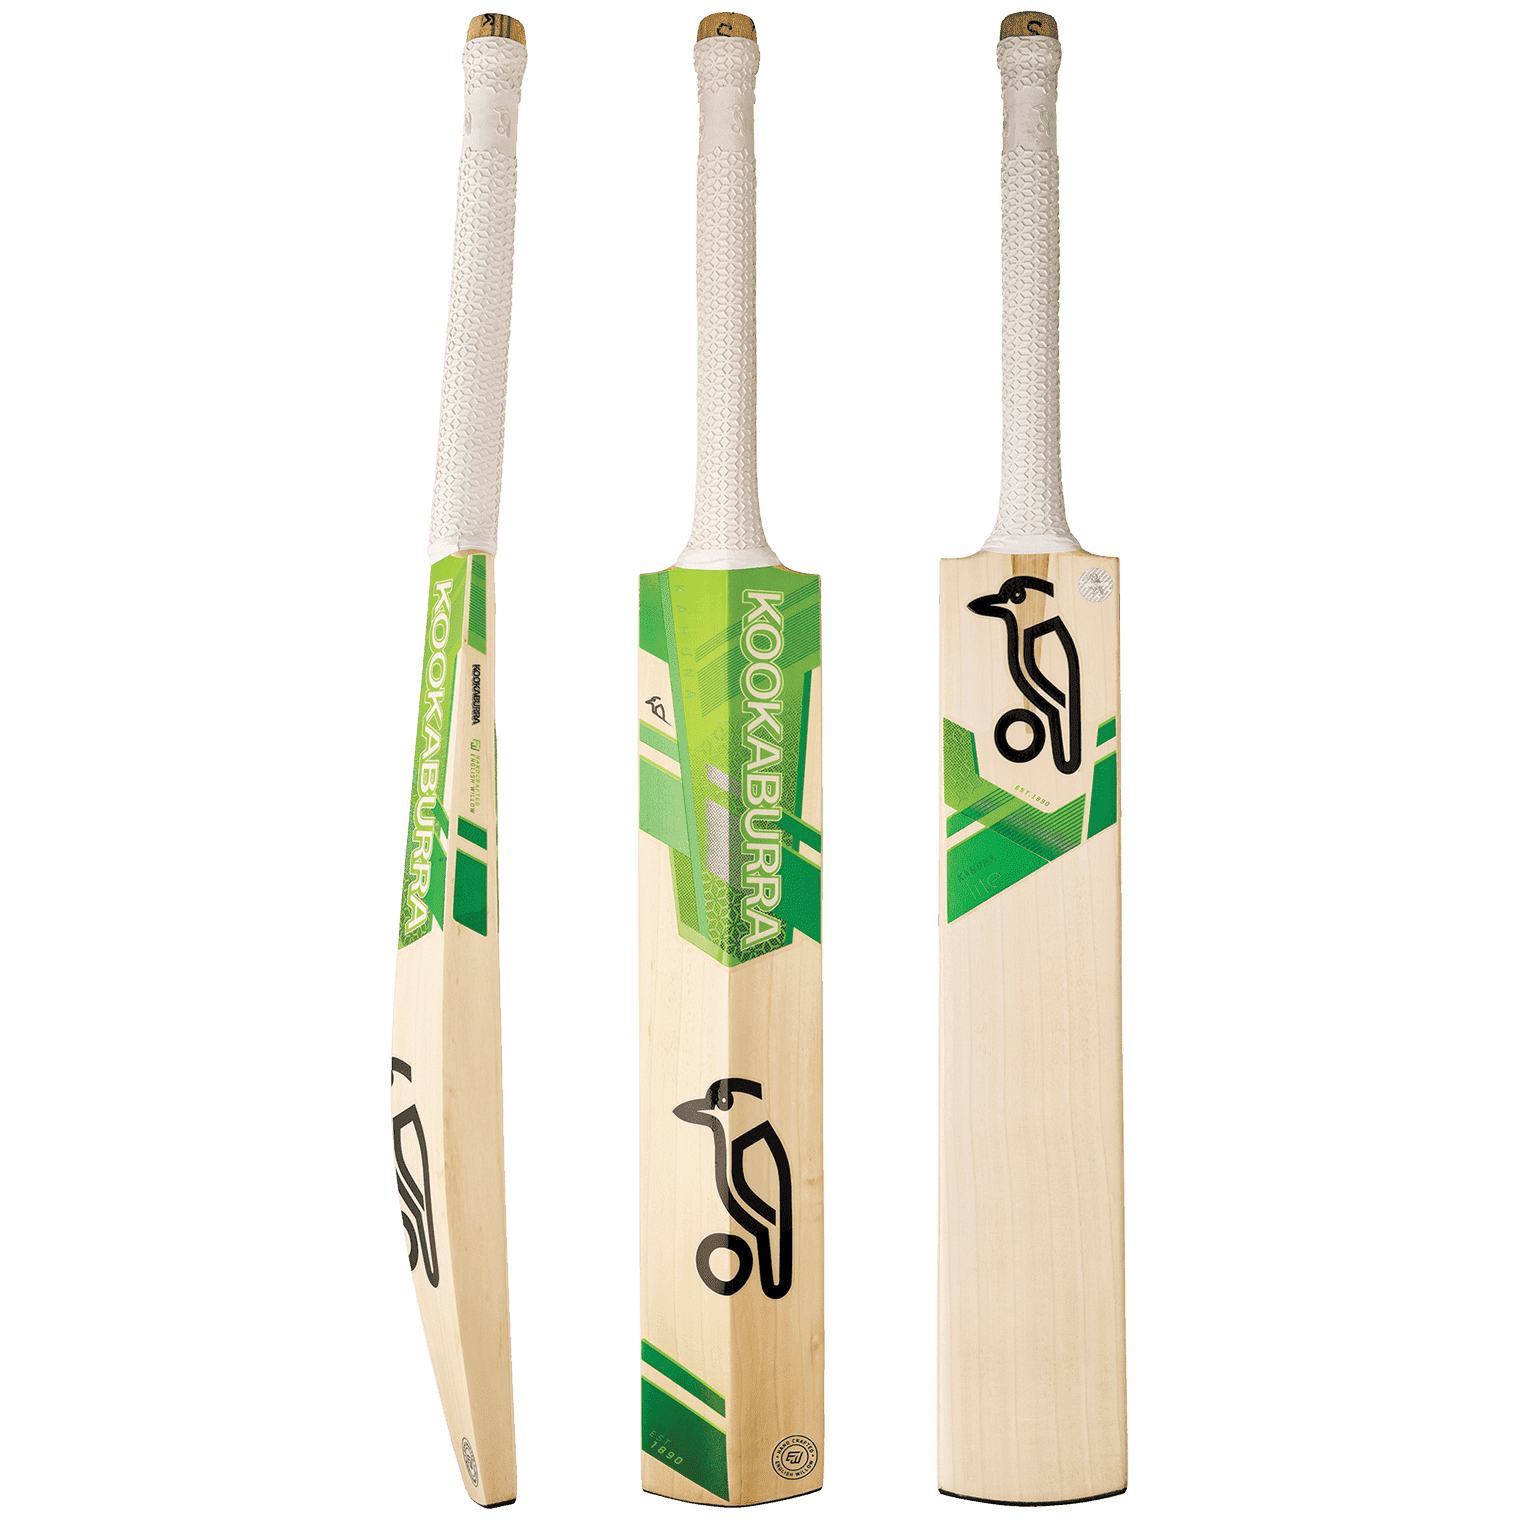 kookaburra cricket bats